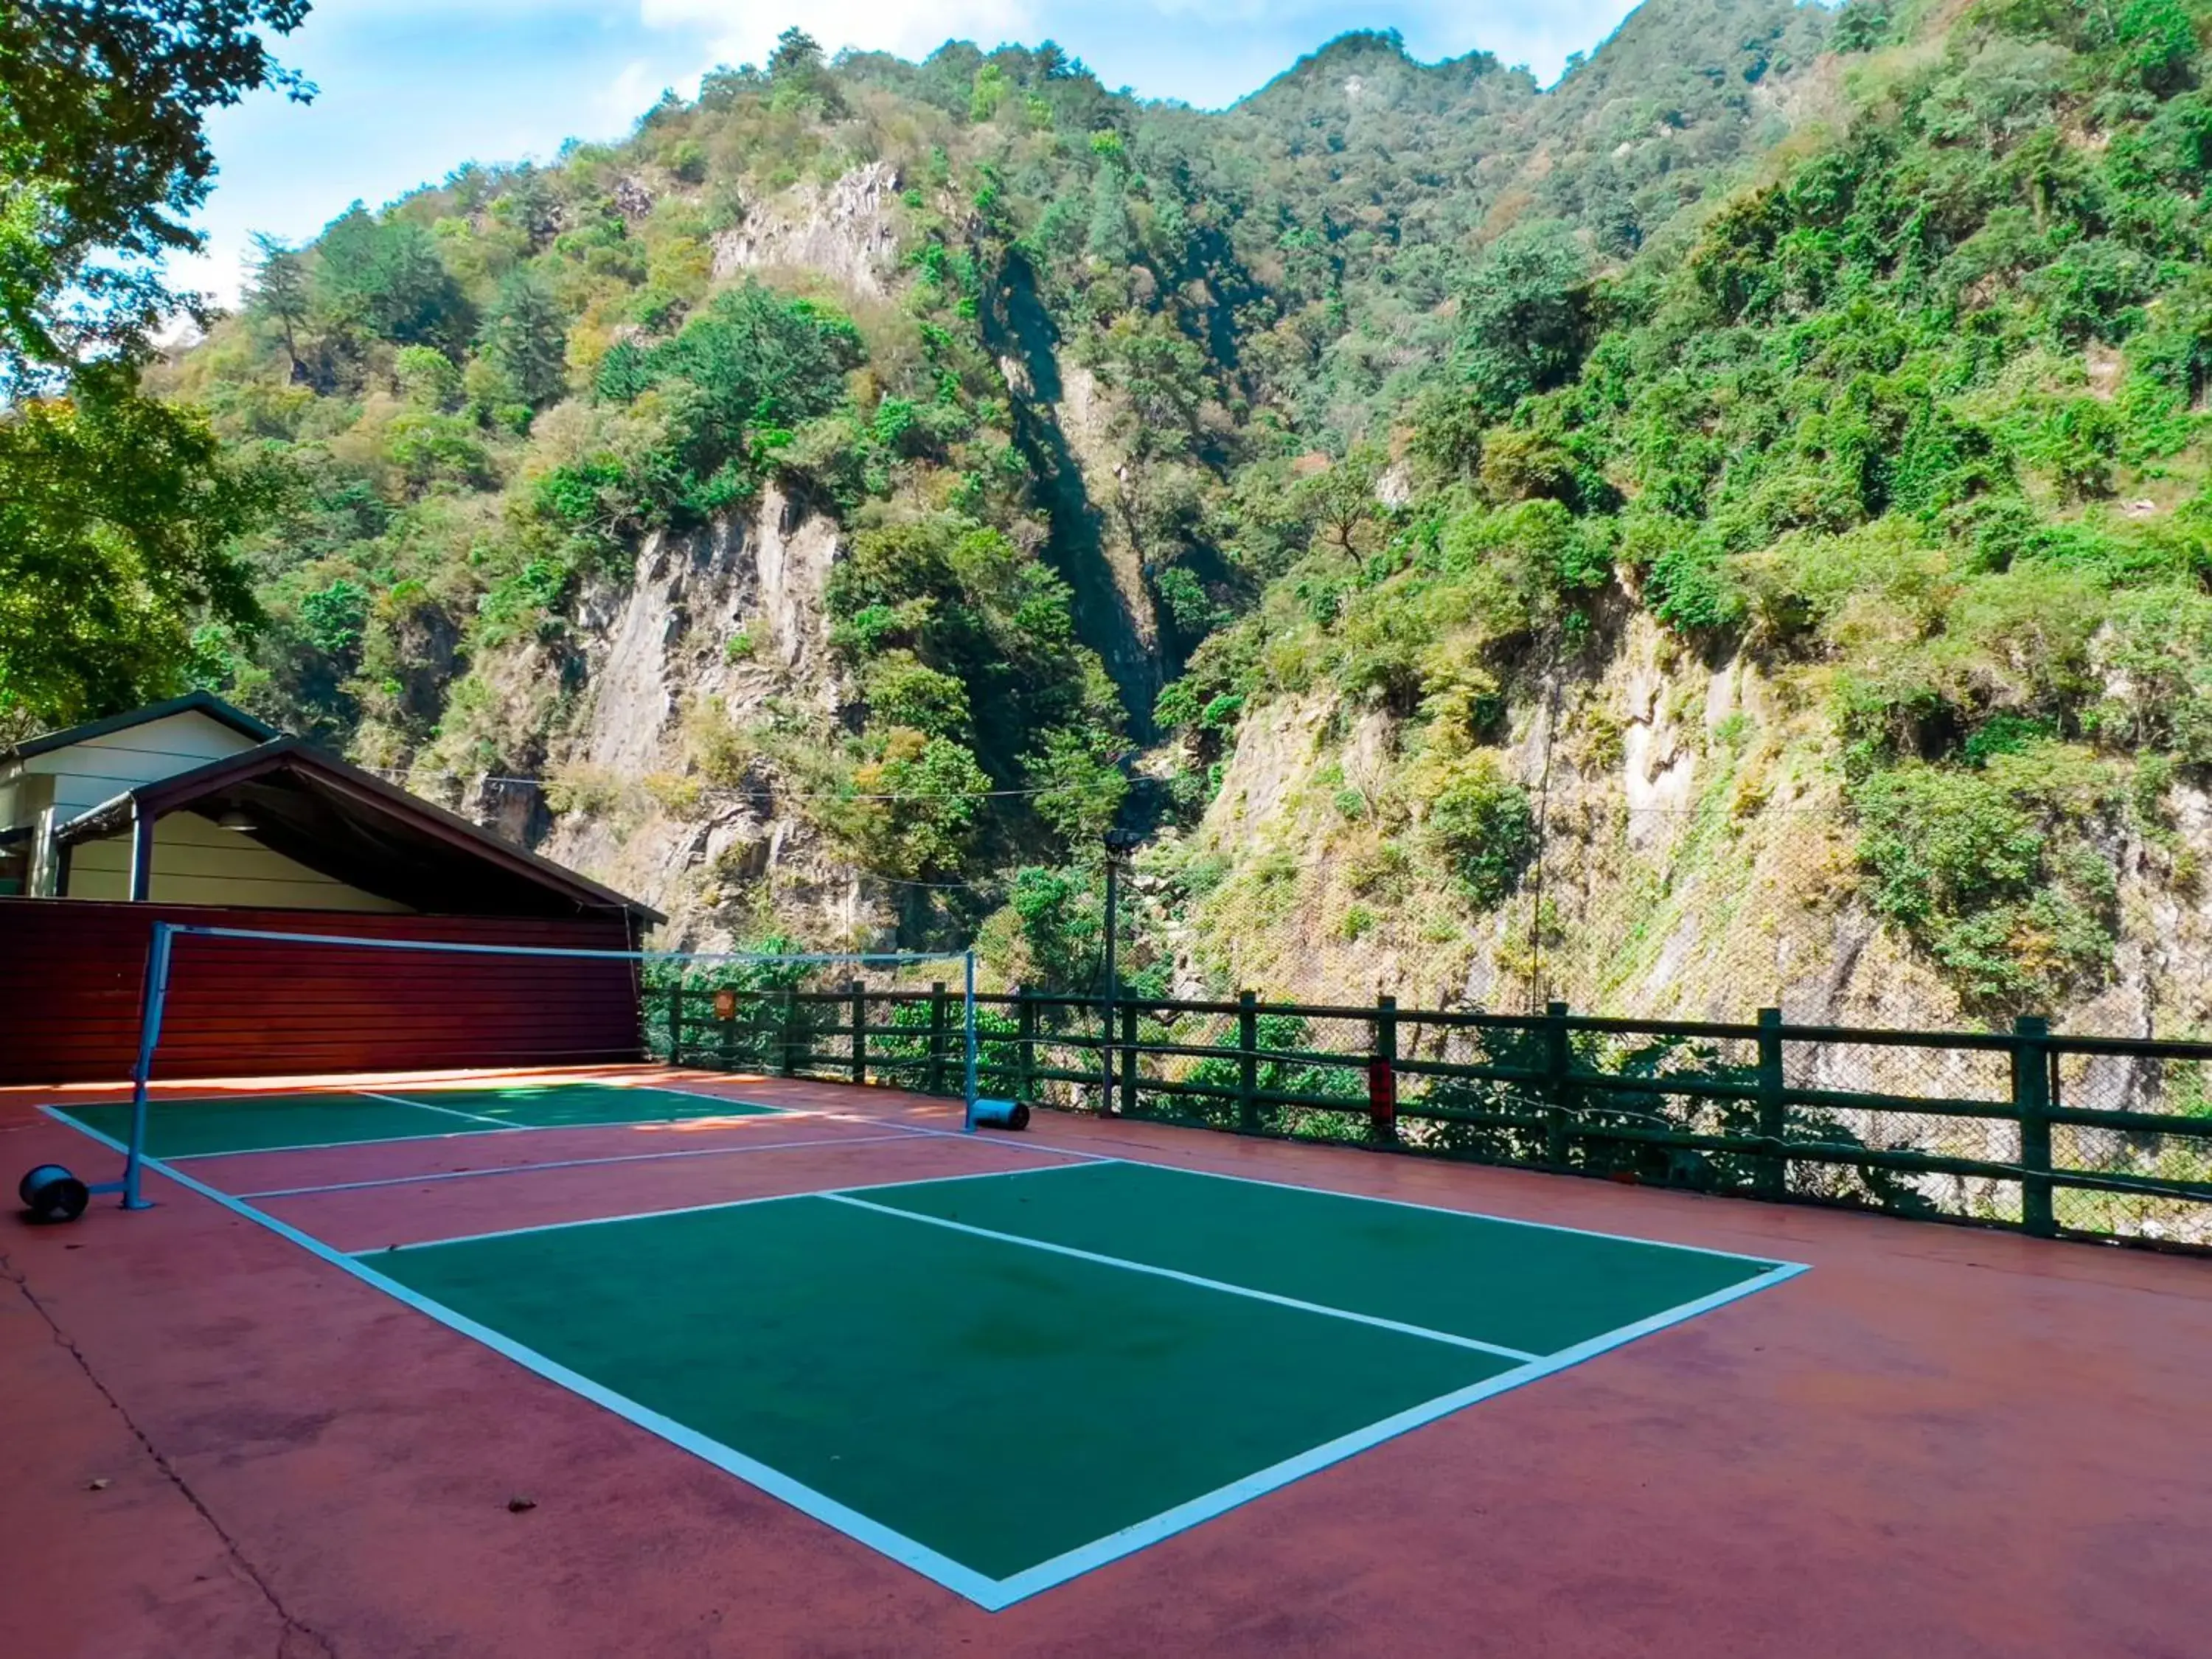 Tennis court in Uni-Resort Ku-Kuan